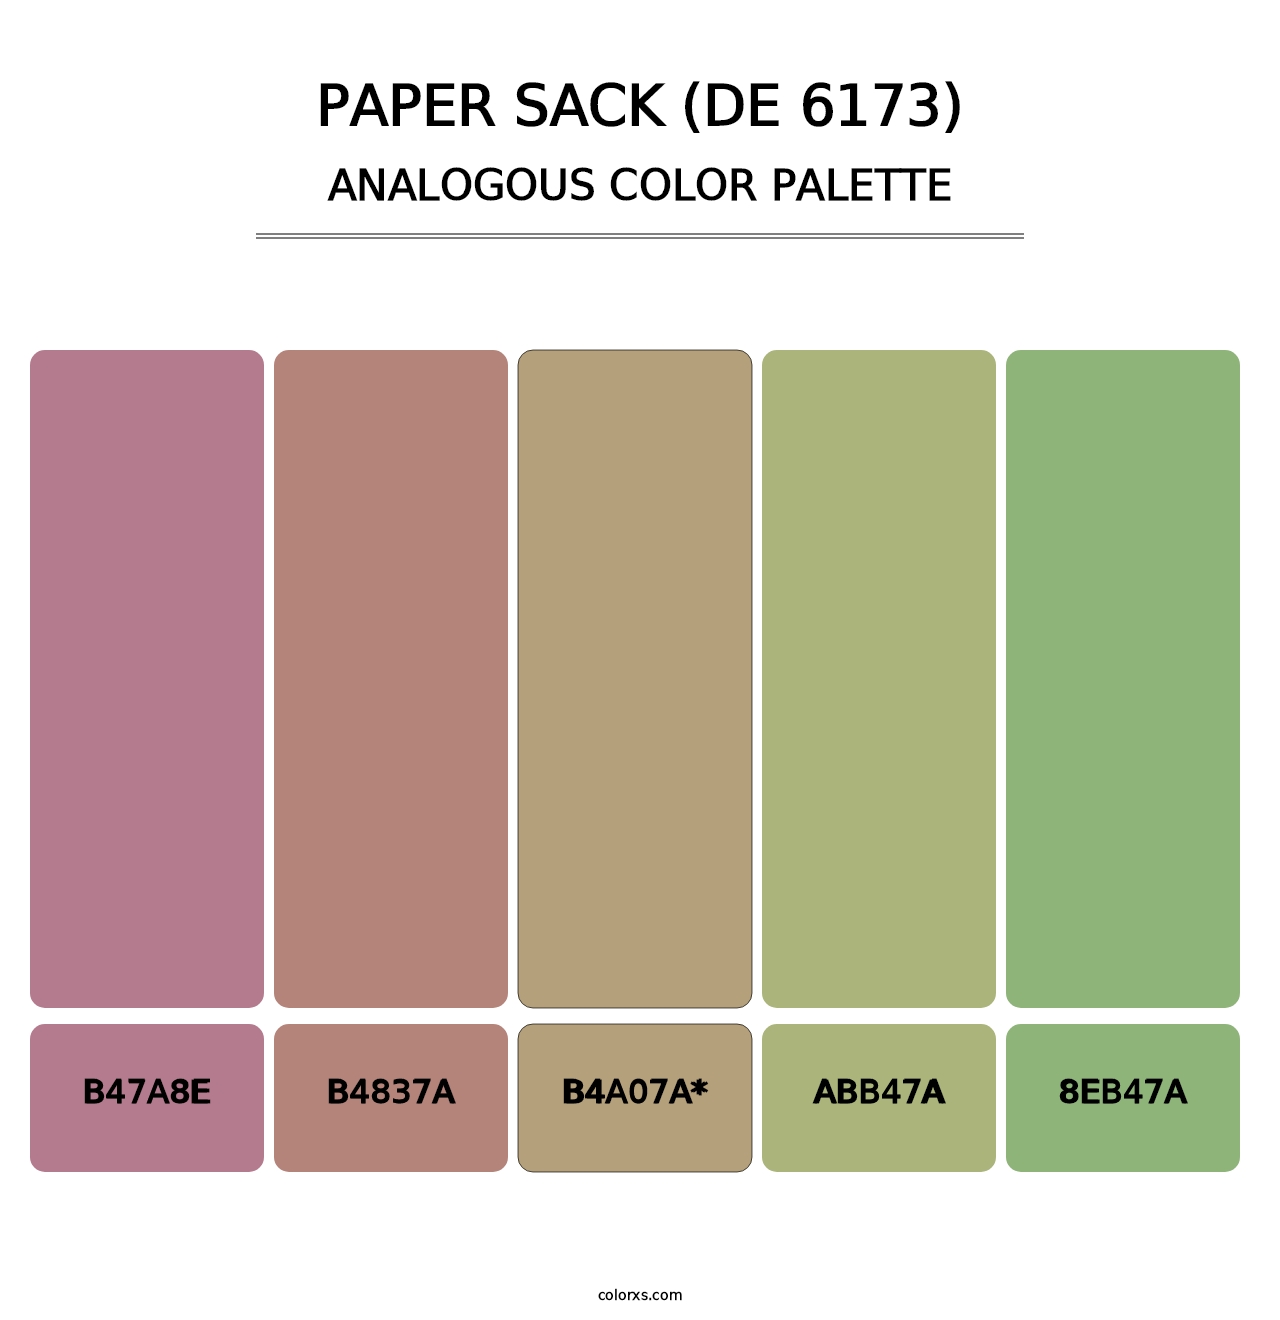 Paper Sack (DE 6173) - Analogous Color Palette